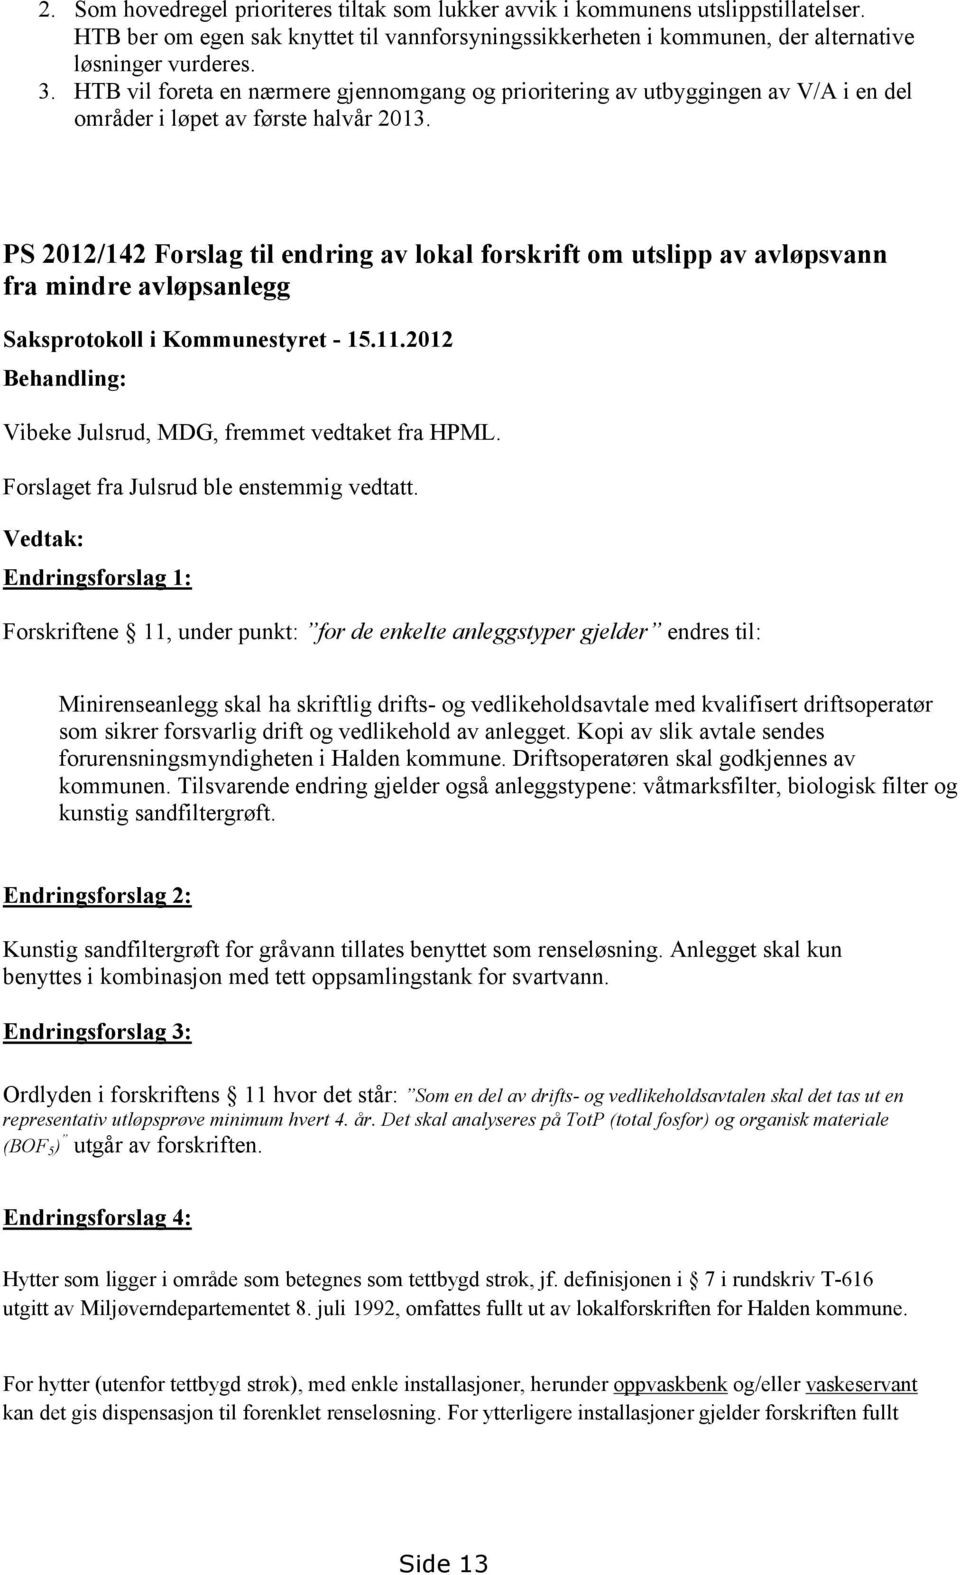 PS 2012/142 Forslag til endring av lokal forskrift om utslipp av avløpsvann fra mindre avløpsanlegg Saksprotokoll i Kommunestyret - 15.11.